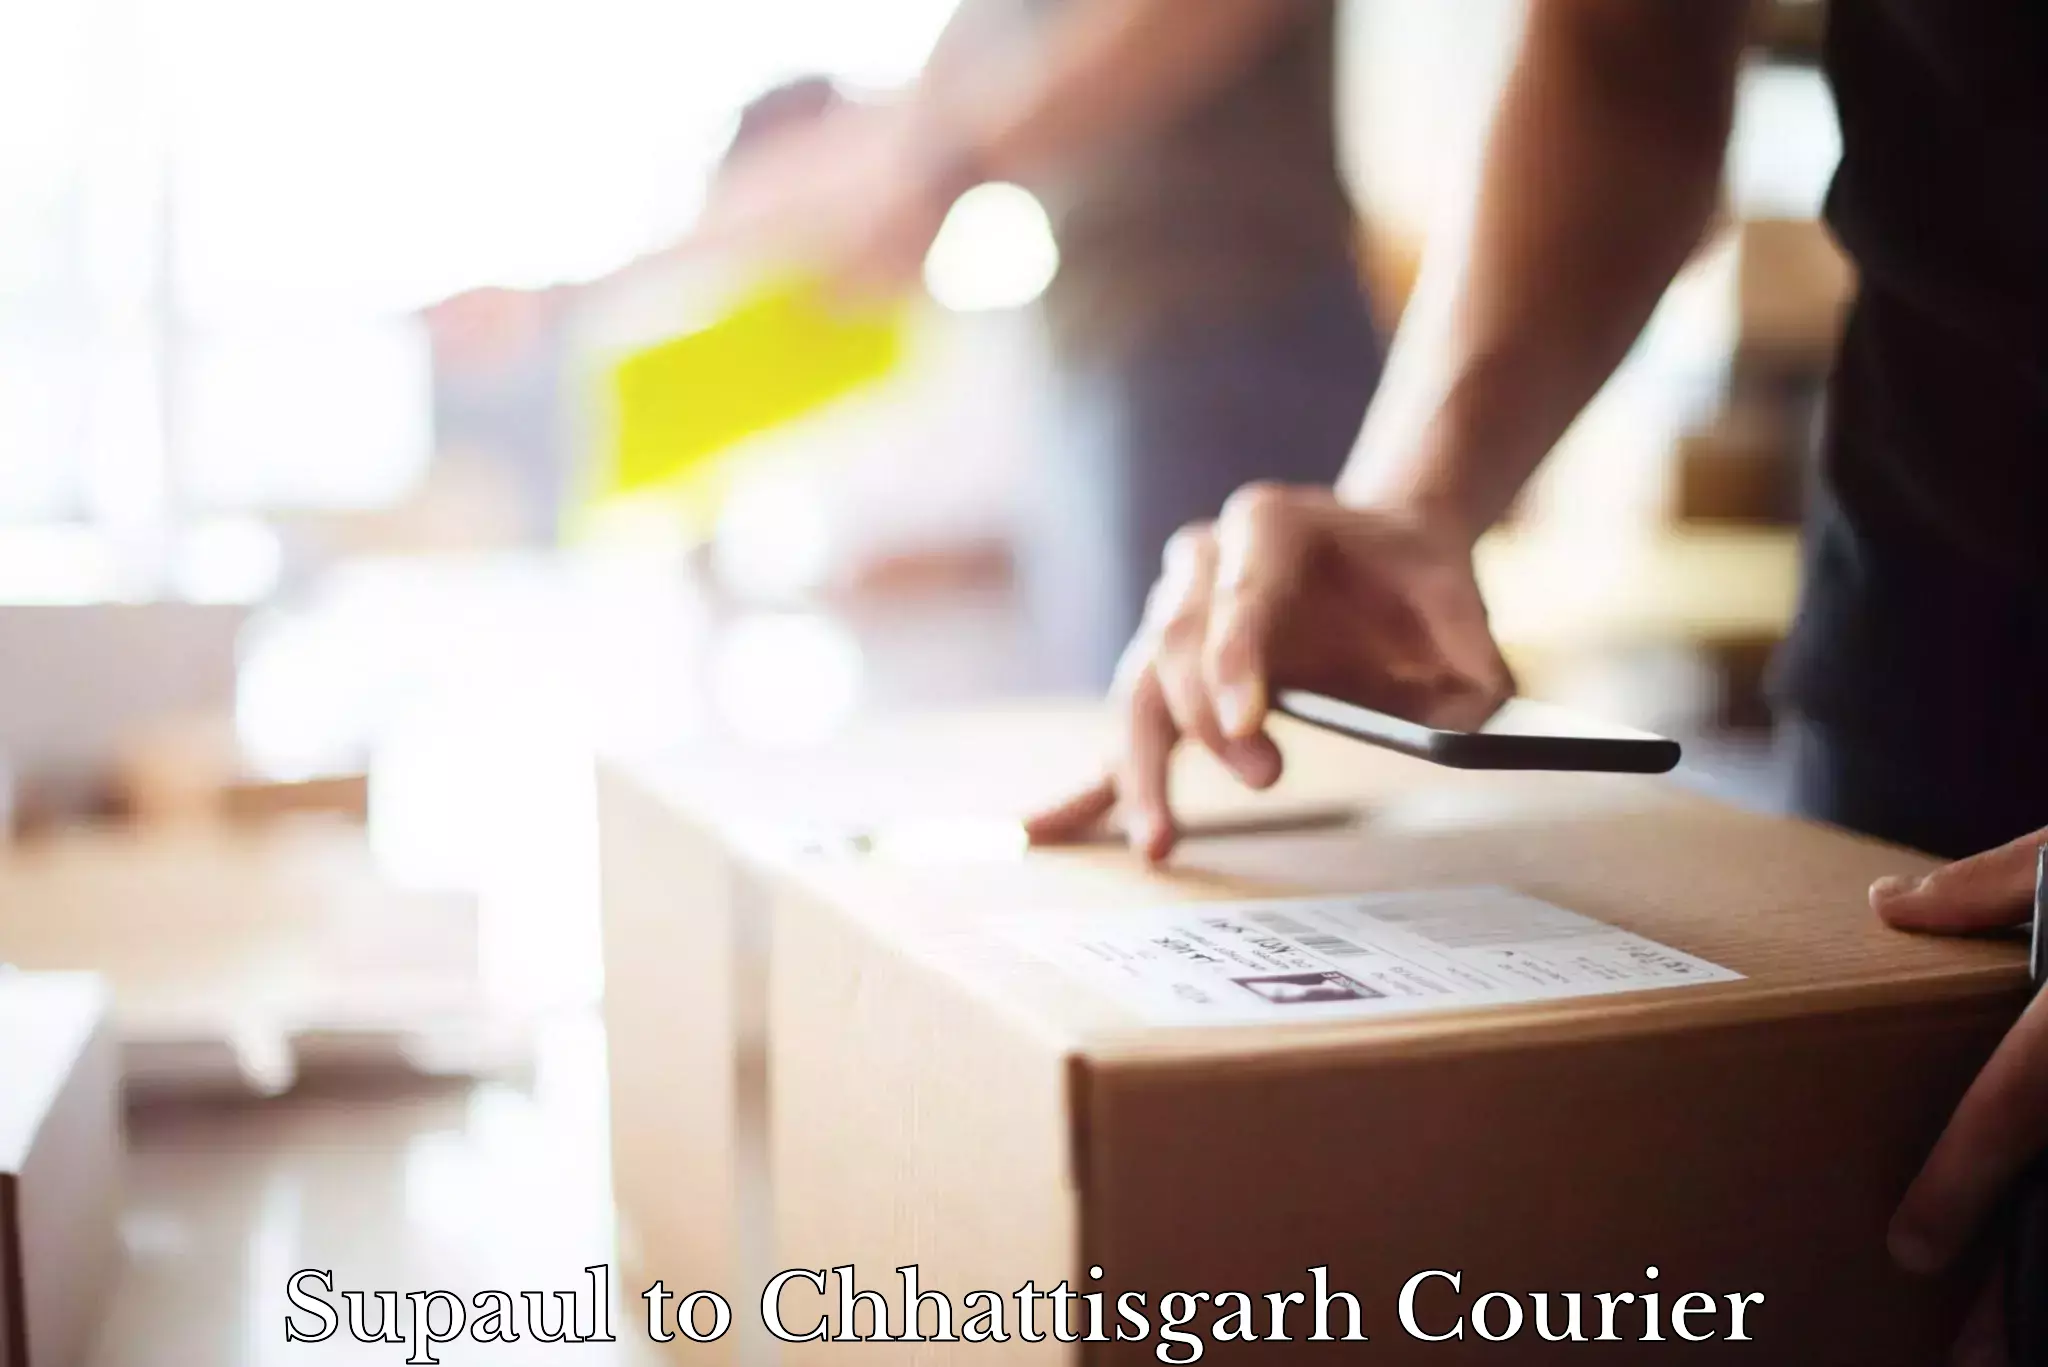 Premium delivery services Supaul to Chhattisgarh